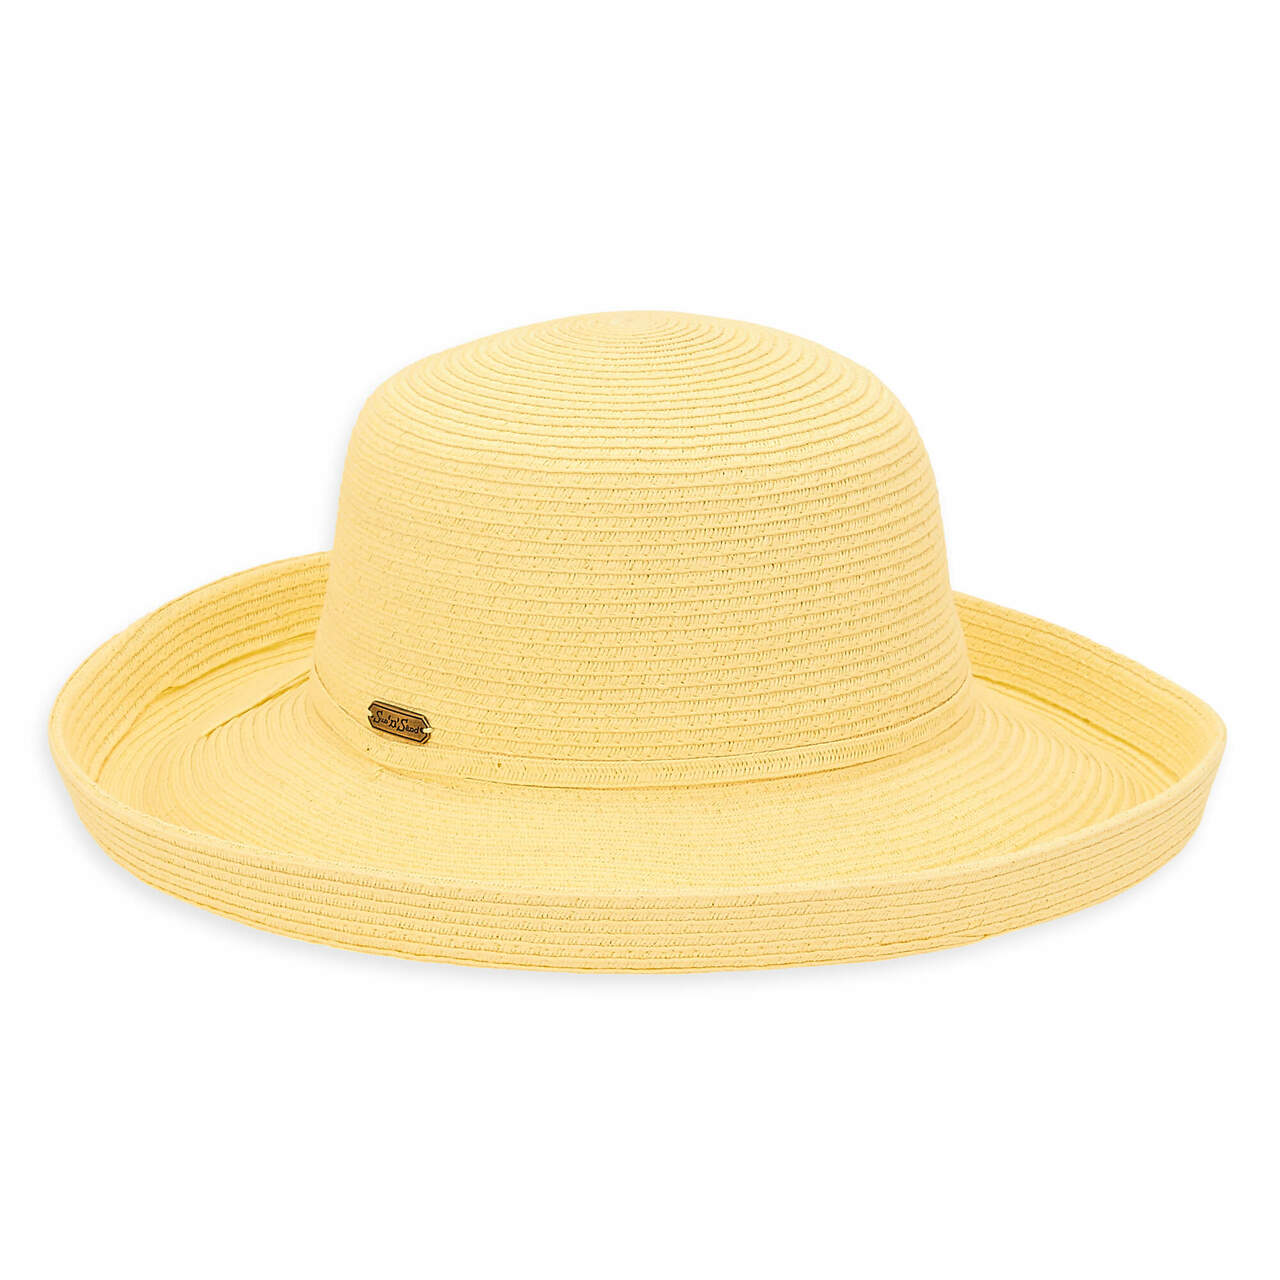 Up Brim Paper Braid SPF Sun Hat in Colors